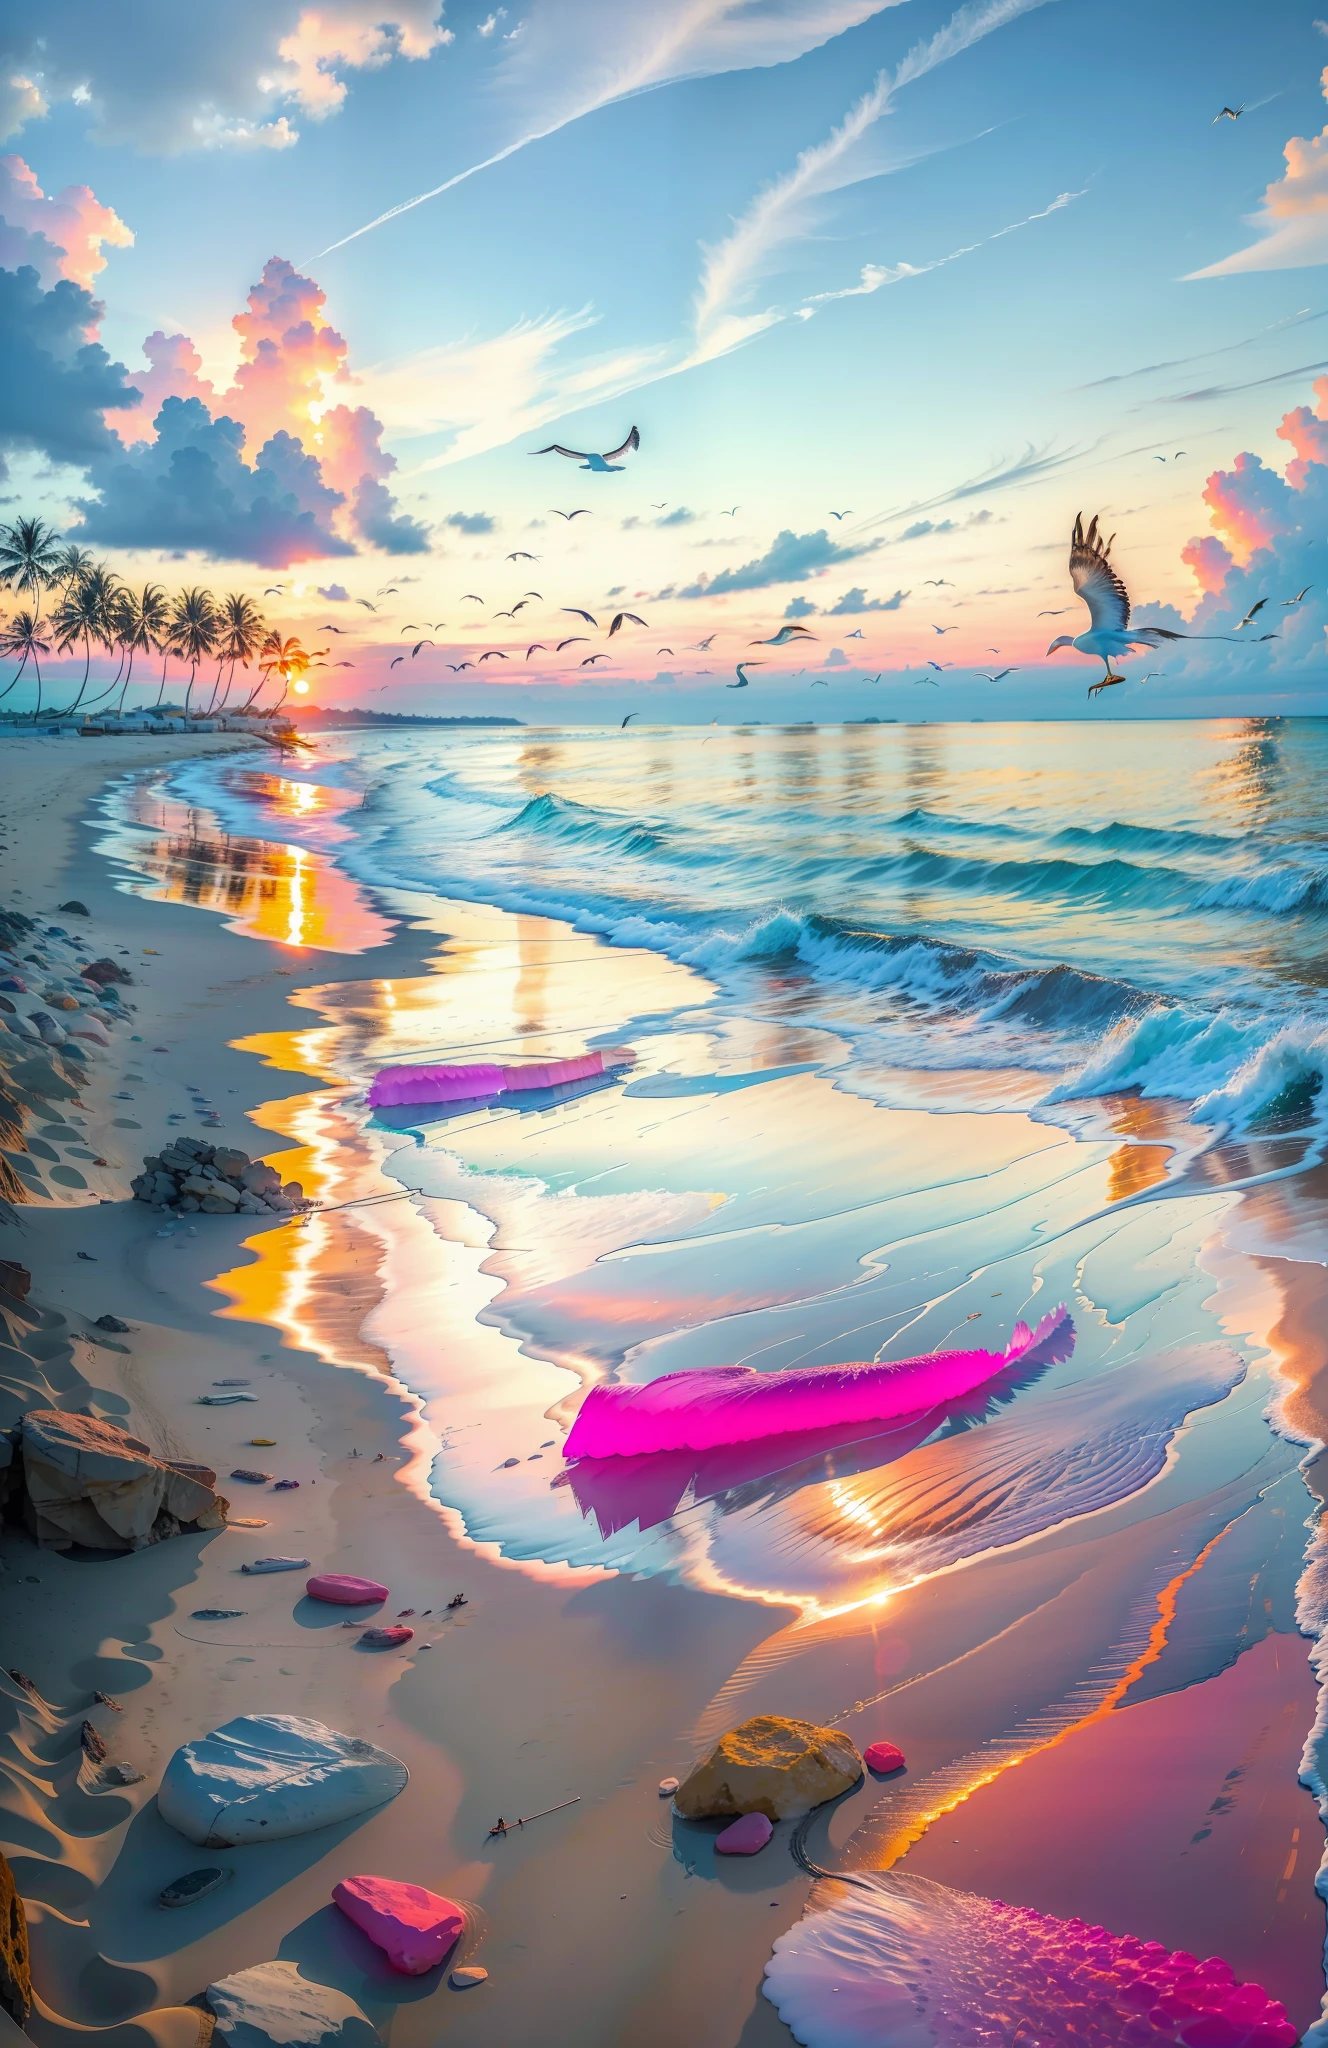 A praia é coberta por pedras lisas transparentes coloridas: 1.5, um pôr do sol absolutamente hipnotizante na praia com uma mistura de laranja, rosa e amarelo no céu. A água é cristalina, beijando suavemente a costa, e a praia de areia branca se estende até onde a vista alcança. A cena é dinâmica e de tirar o fôlego, com gaivotas voando alto no céu e palmeiras balançando suavemente. Absorva a atmosfera calma e deixe a tranquilidade envolvê-lo.